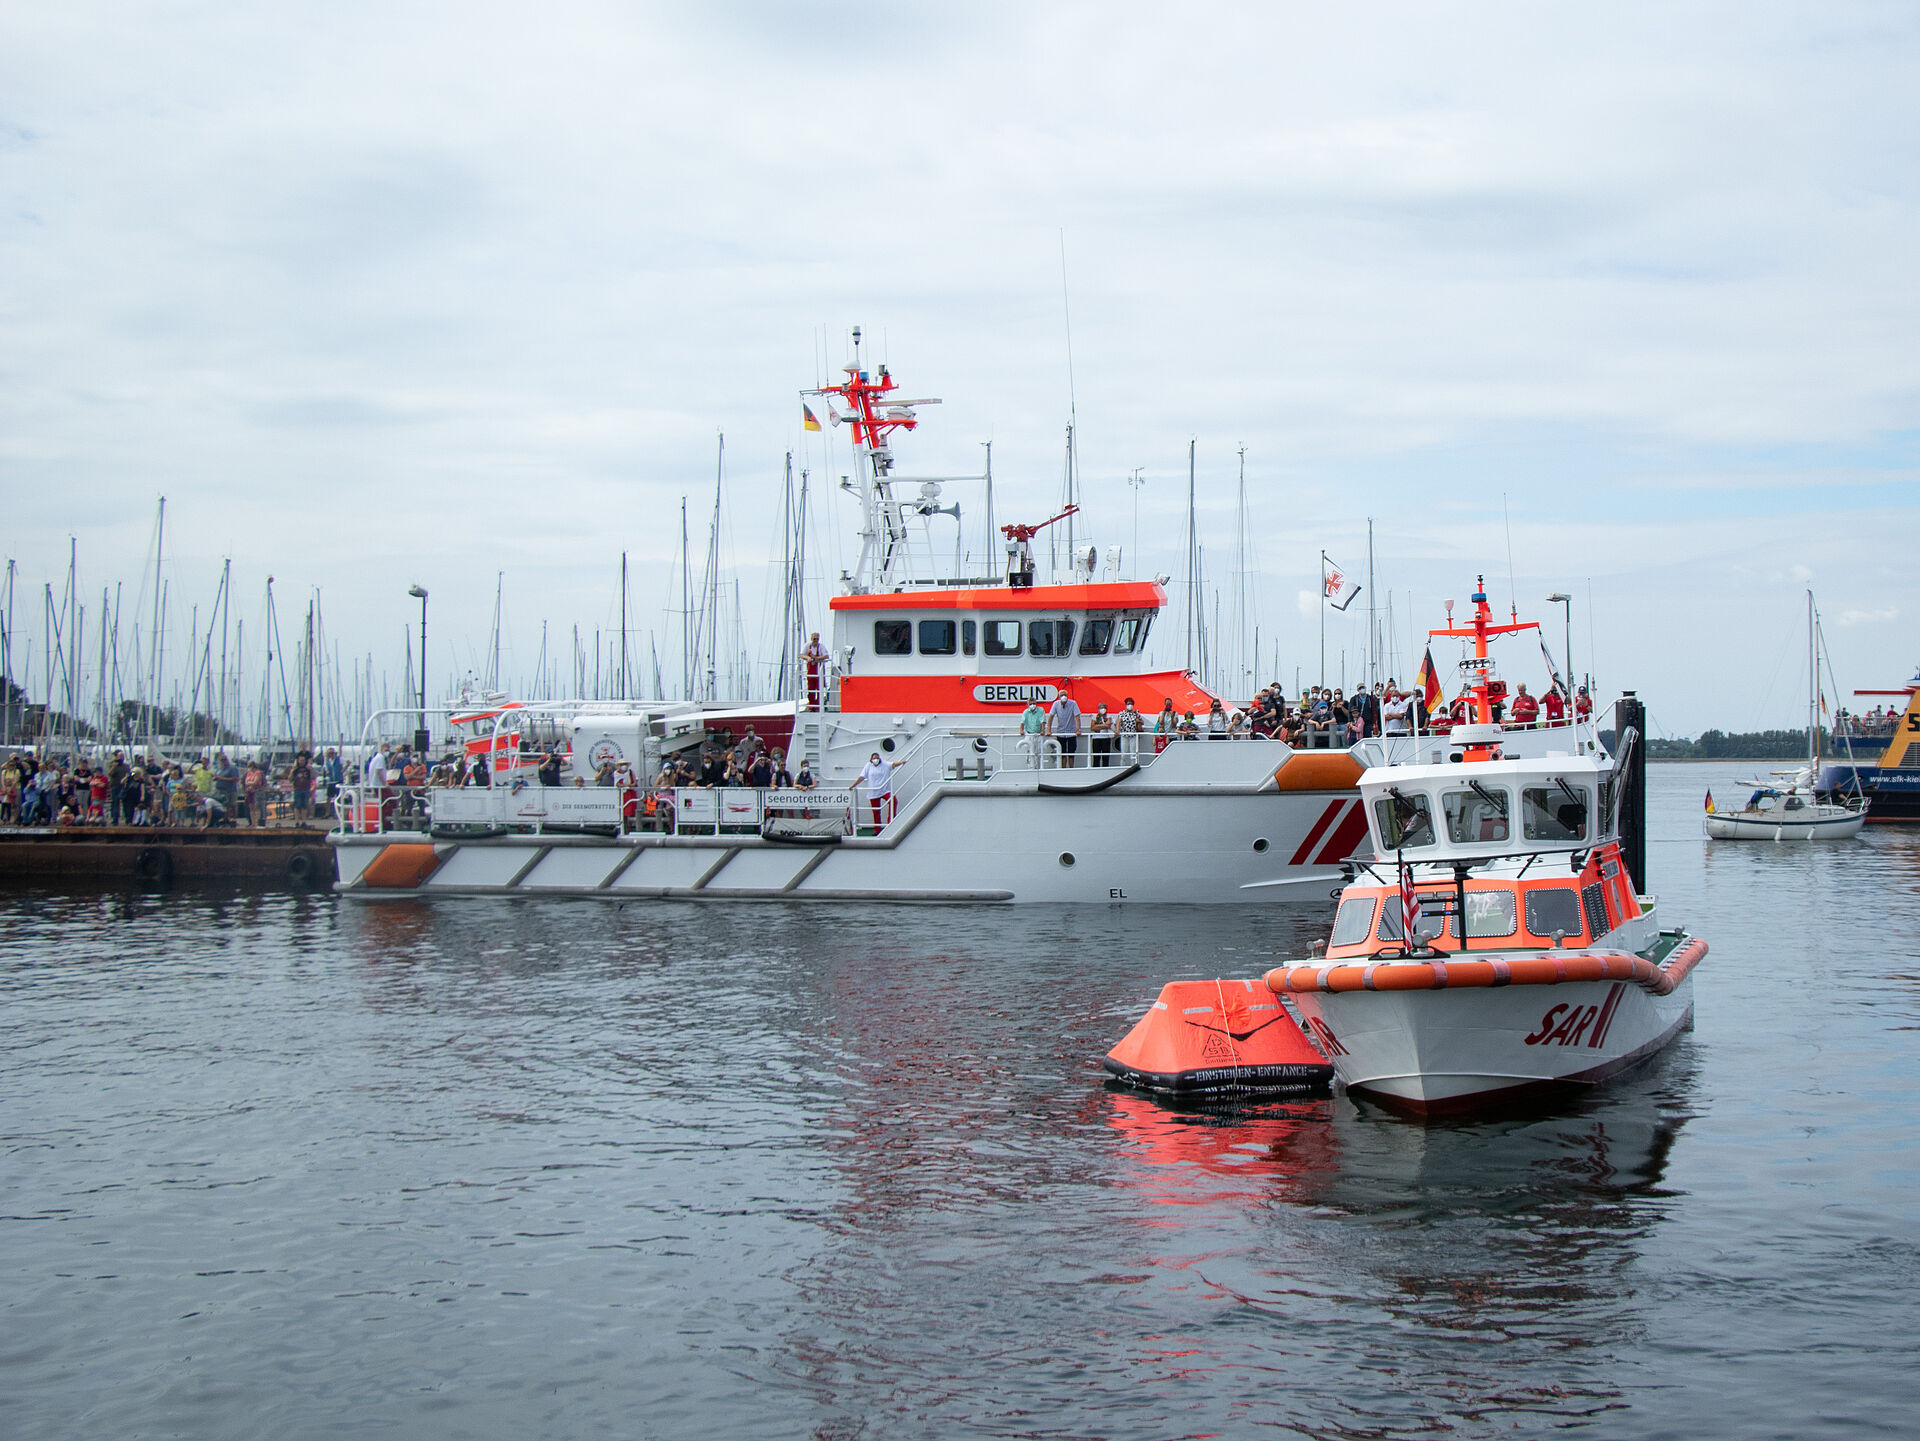 Rettungsinsel und zwei Rettungsschiffe der Seenotretter im Hafenbecken